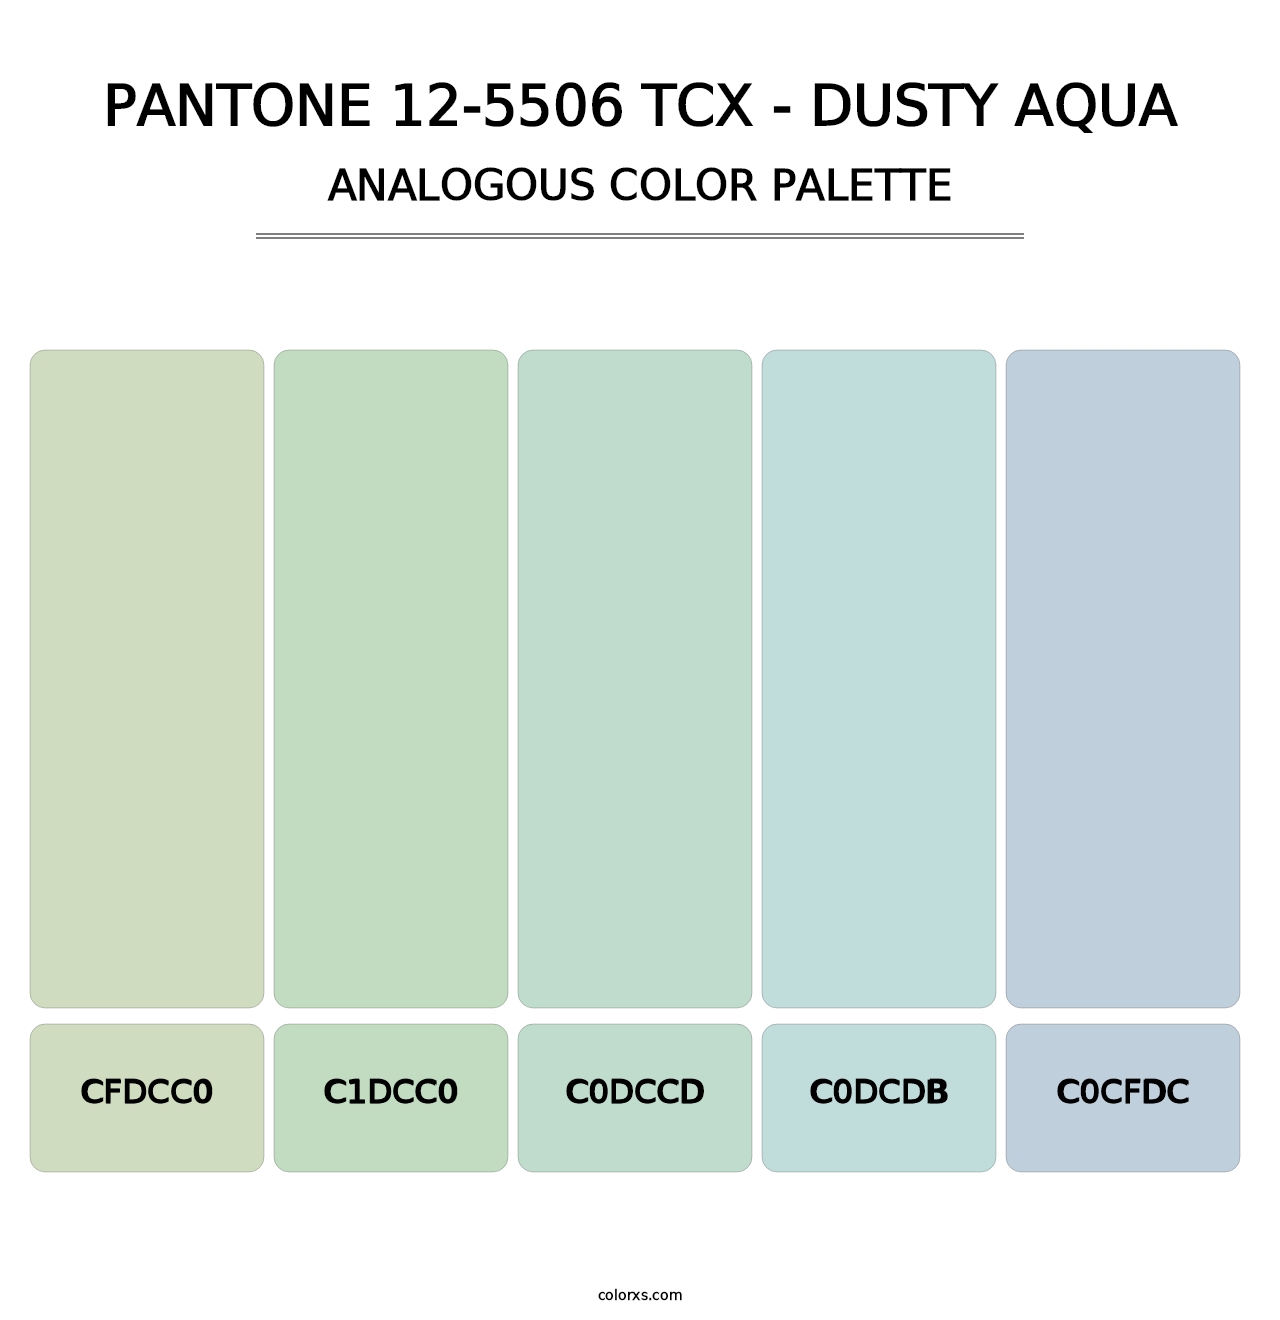 PANTONE 12-5506 TCX - Dusty Aqua - Analogous Color Palette